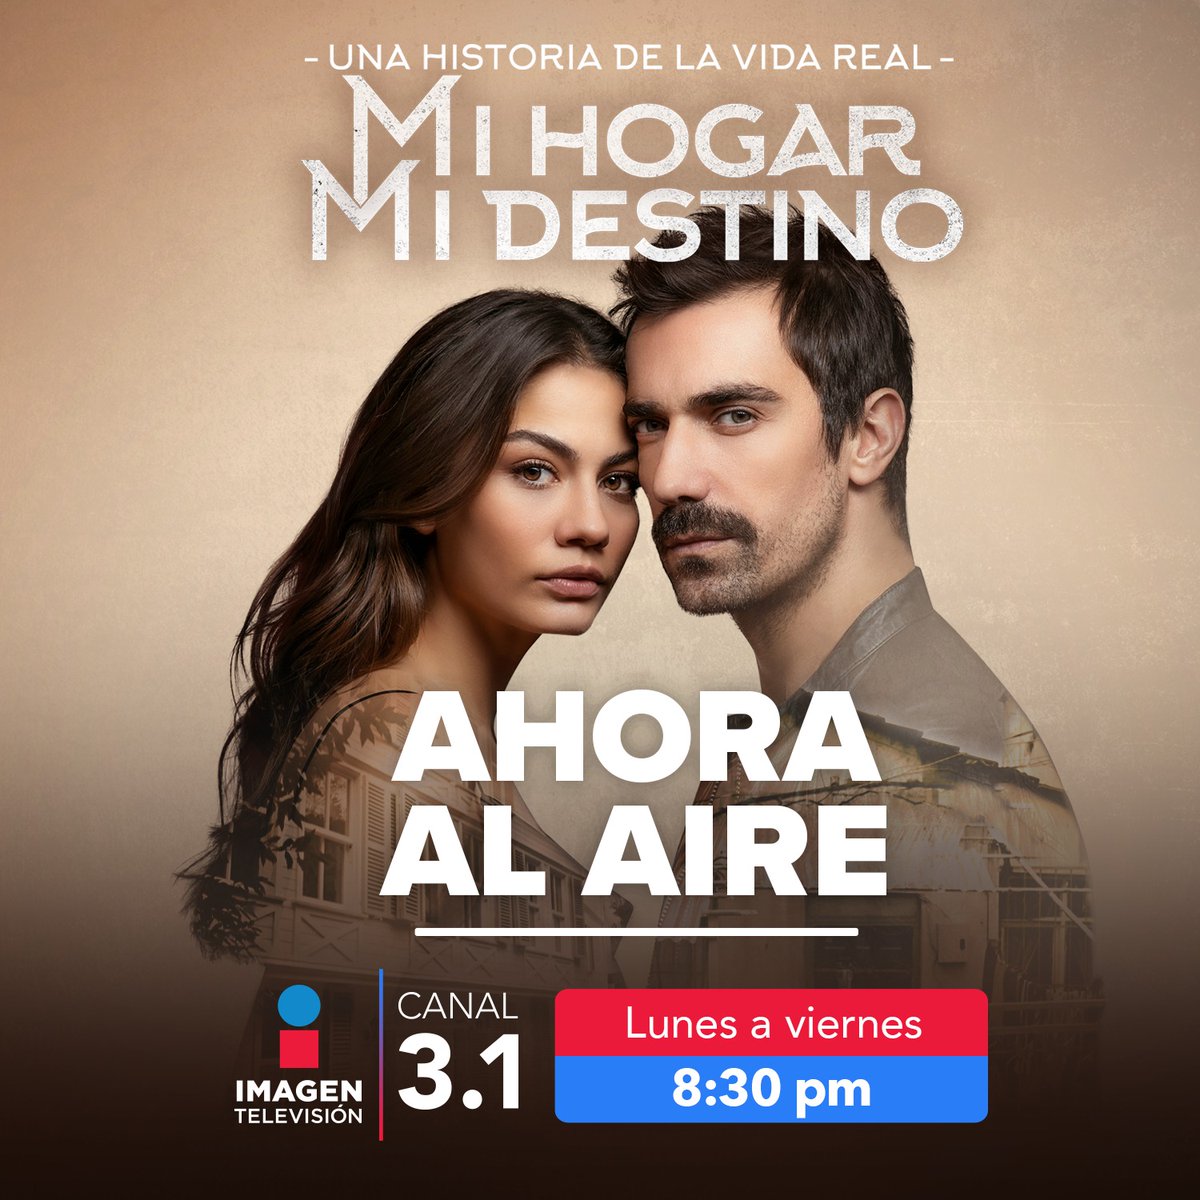 ¡Ya al aire #MiHogarMiDestinoEnImagen por el 3.1 #ImagenTelevisión!